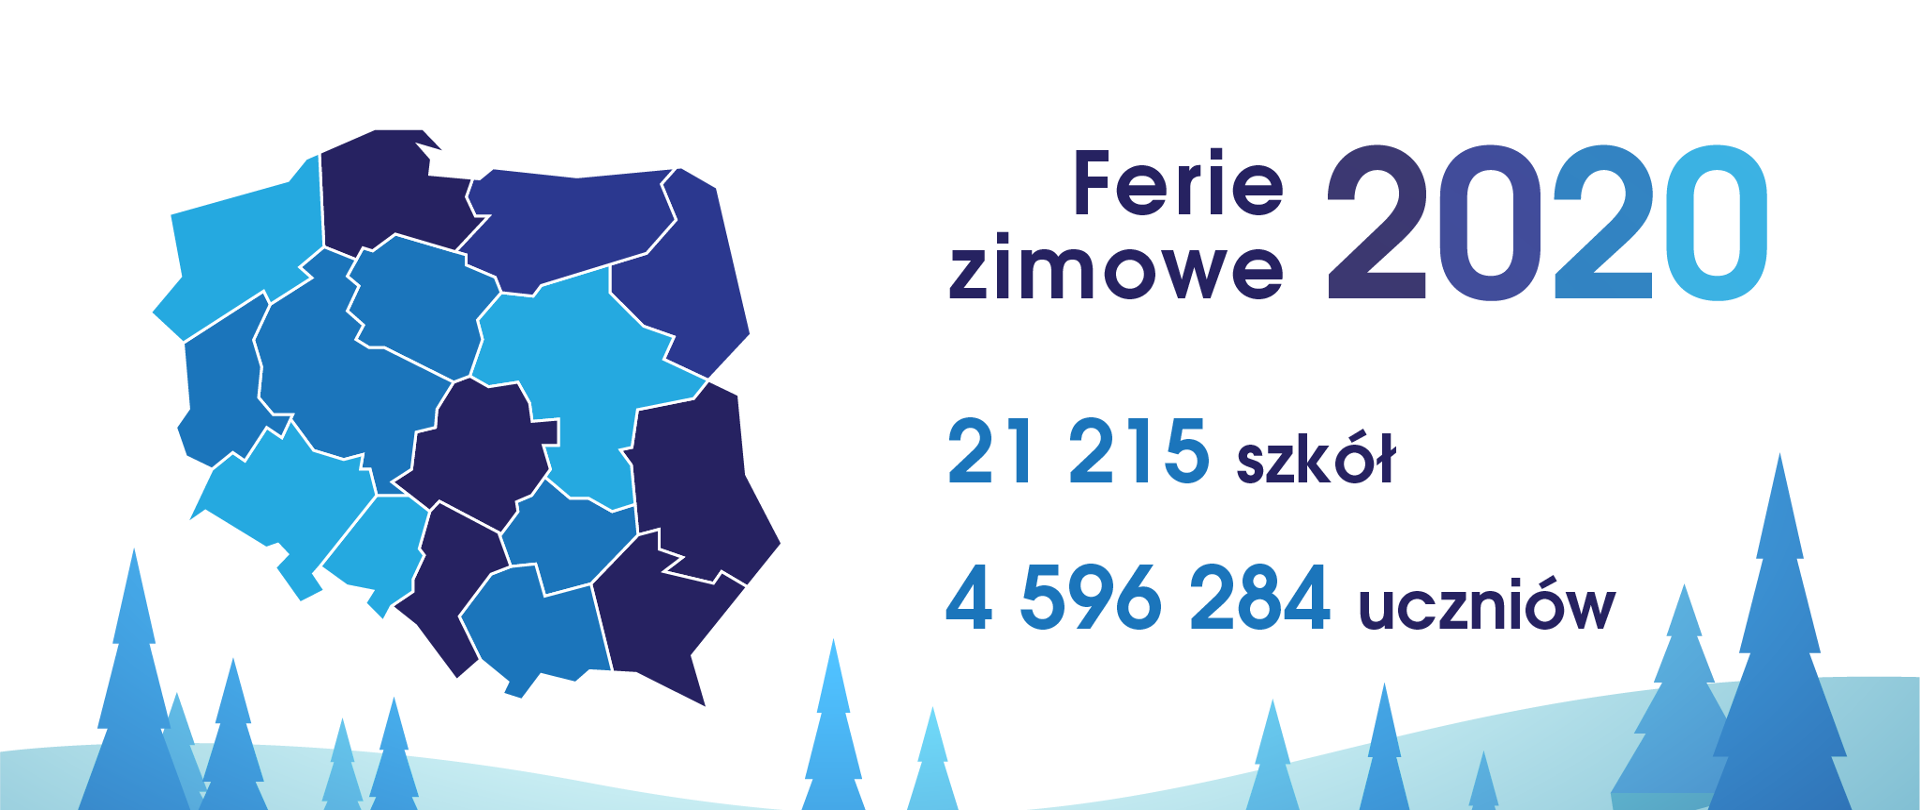 Grafika przedstawiająca mapę Polski z napisem Ferie 2020. 